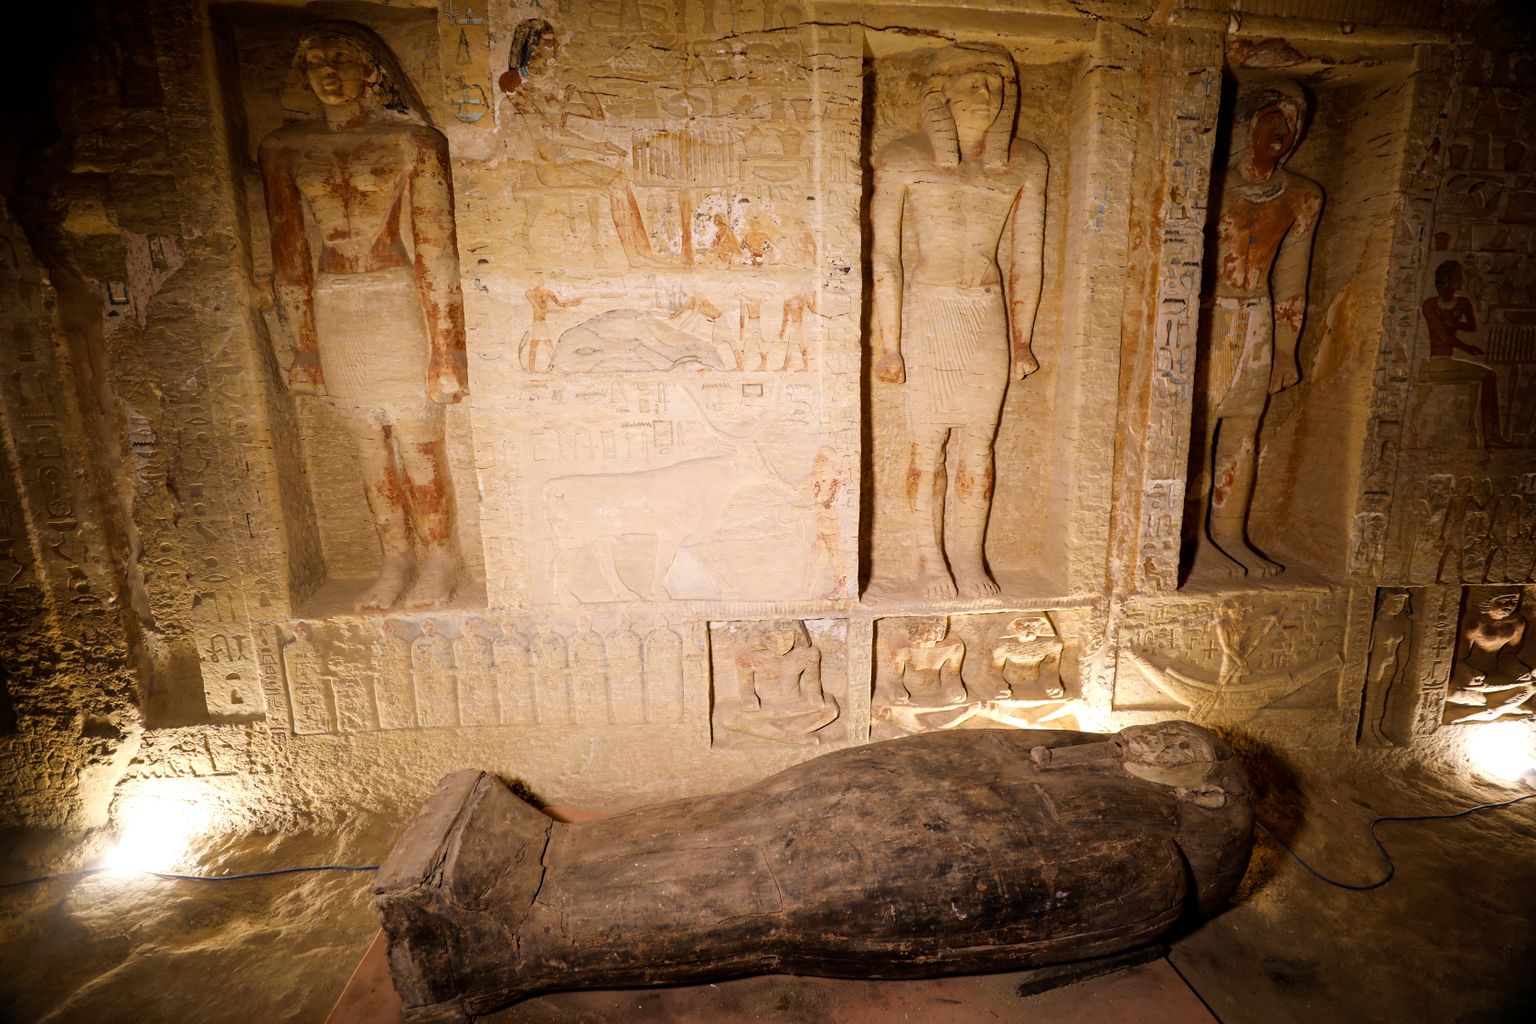 Egiptuse Saqqara nekropolist leiti 59 kinnist sarkofaagi, milles on muumiad